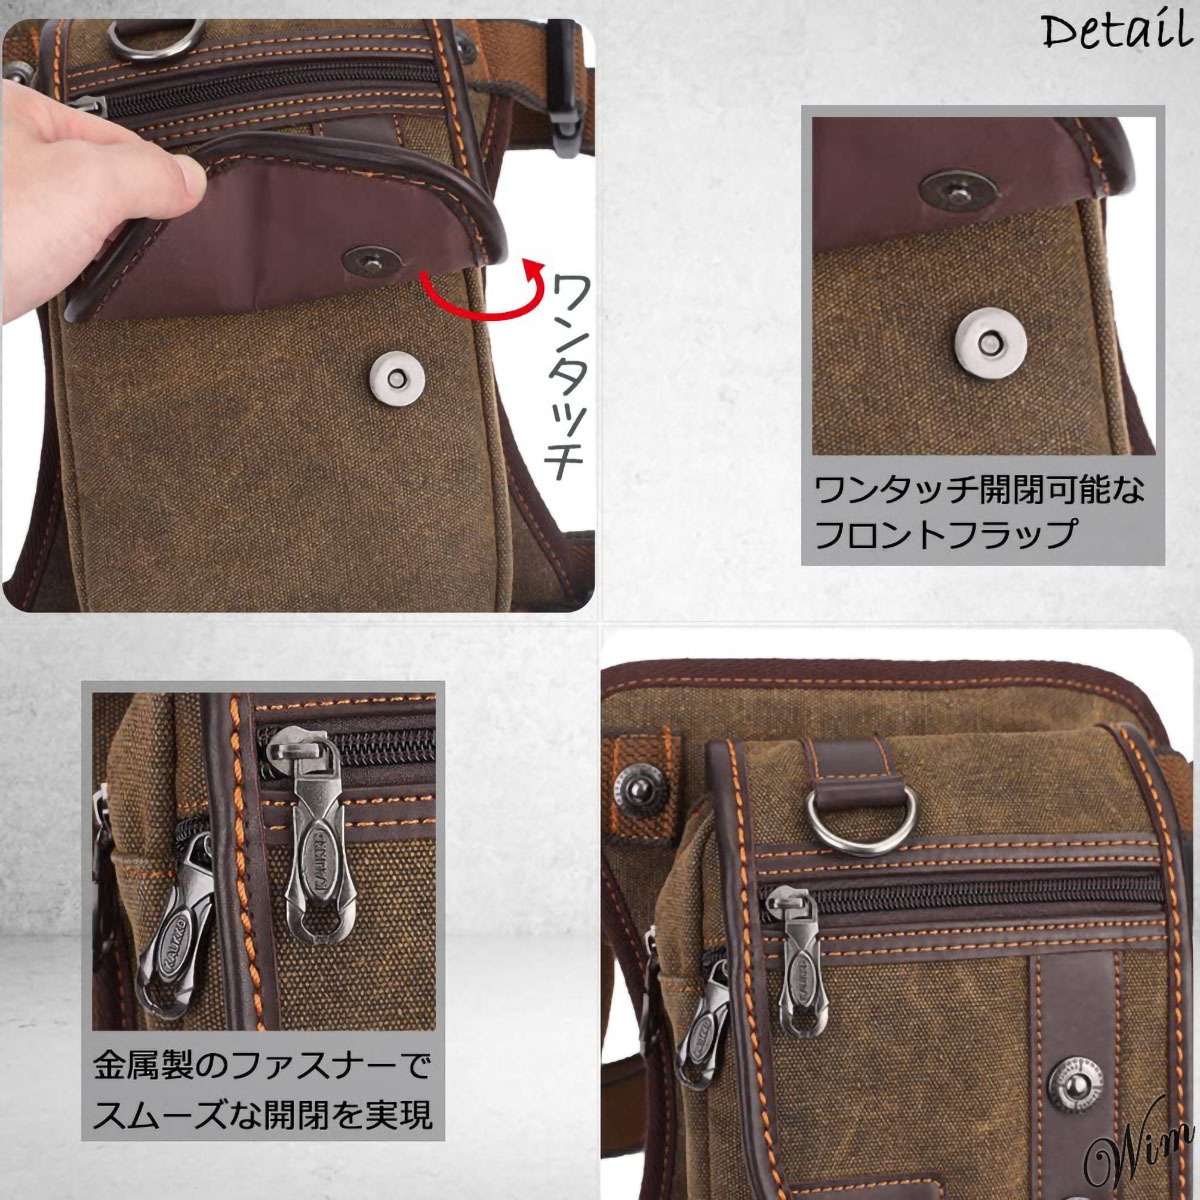 ◆コンパクト型のレッグバッグ◆ ホルスターバッグバッグ 帆布 アクセサリー 小物入れ ブラウン スマホ モバイルバッテリー iPad